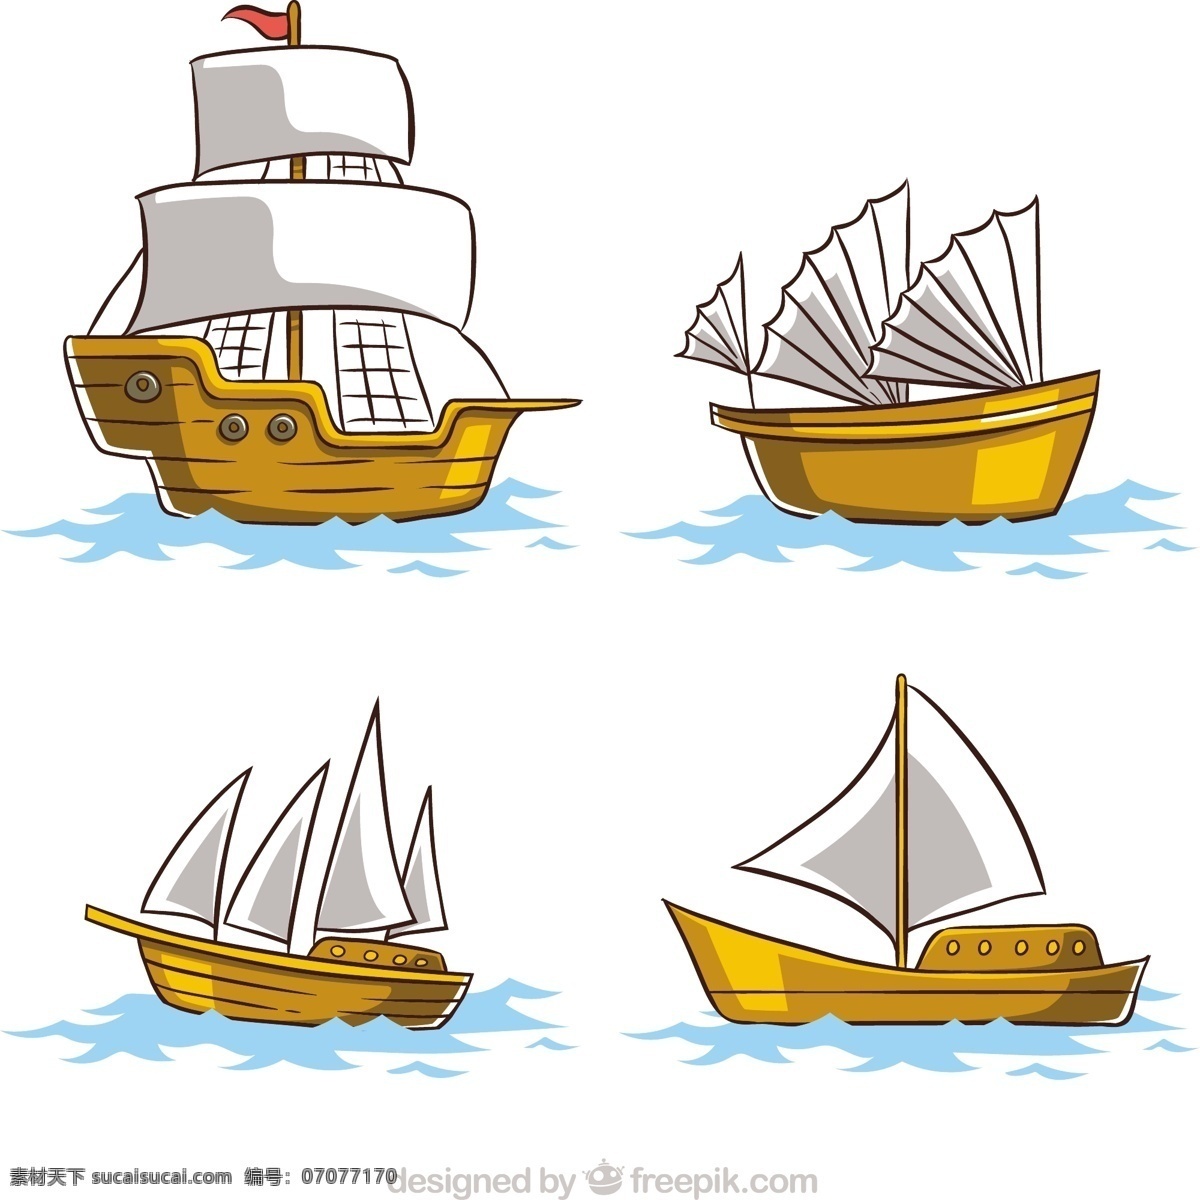 四 种 不同 手绘 木帆船 矢量 设计素材 四种 不同的